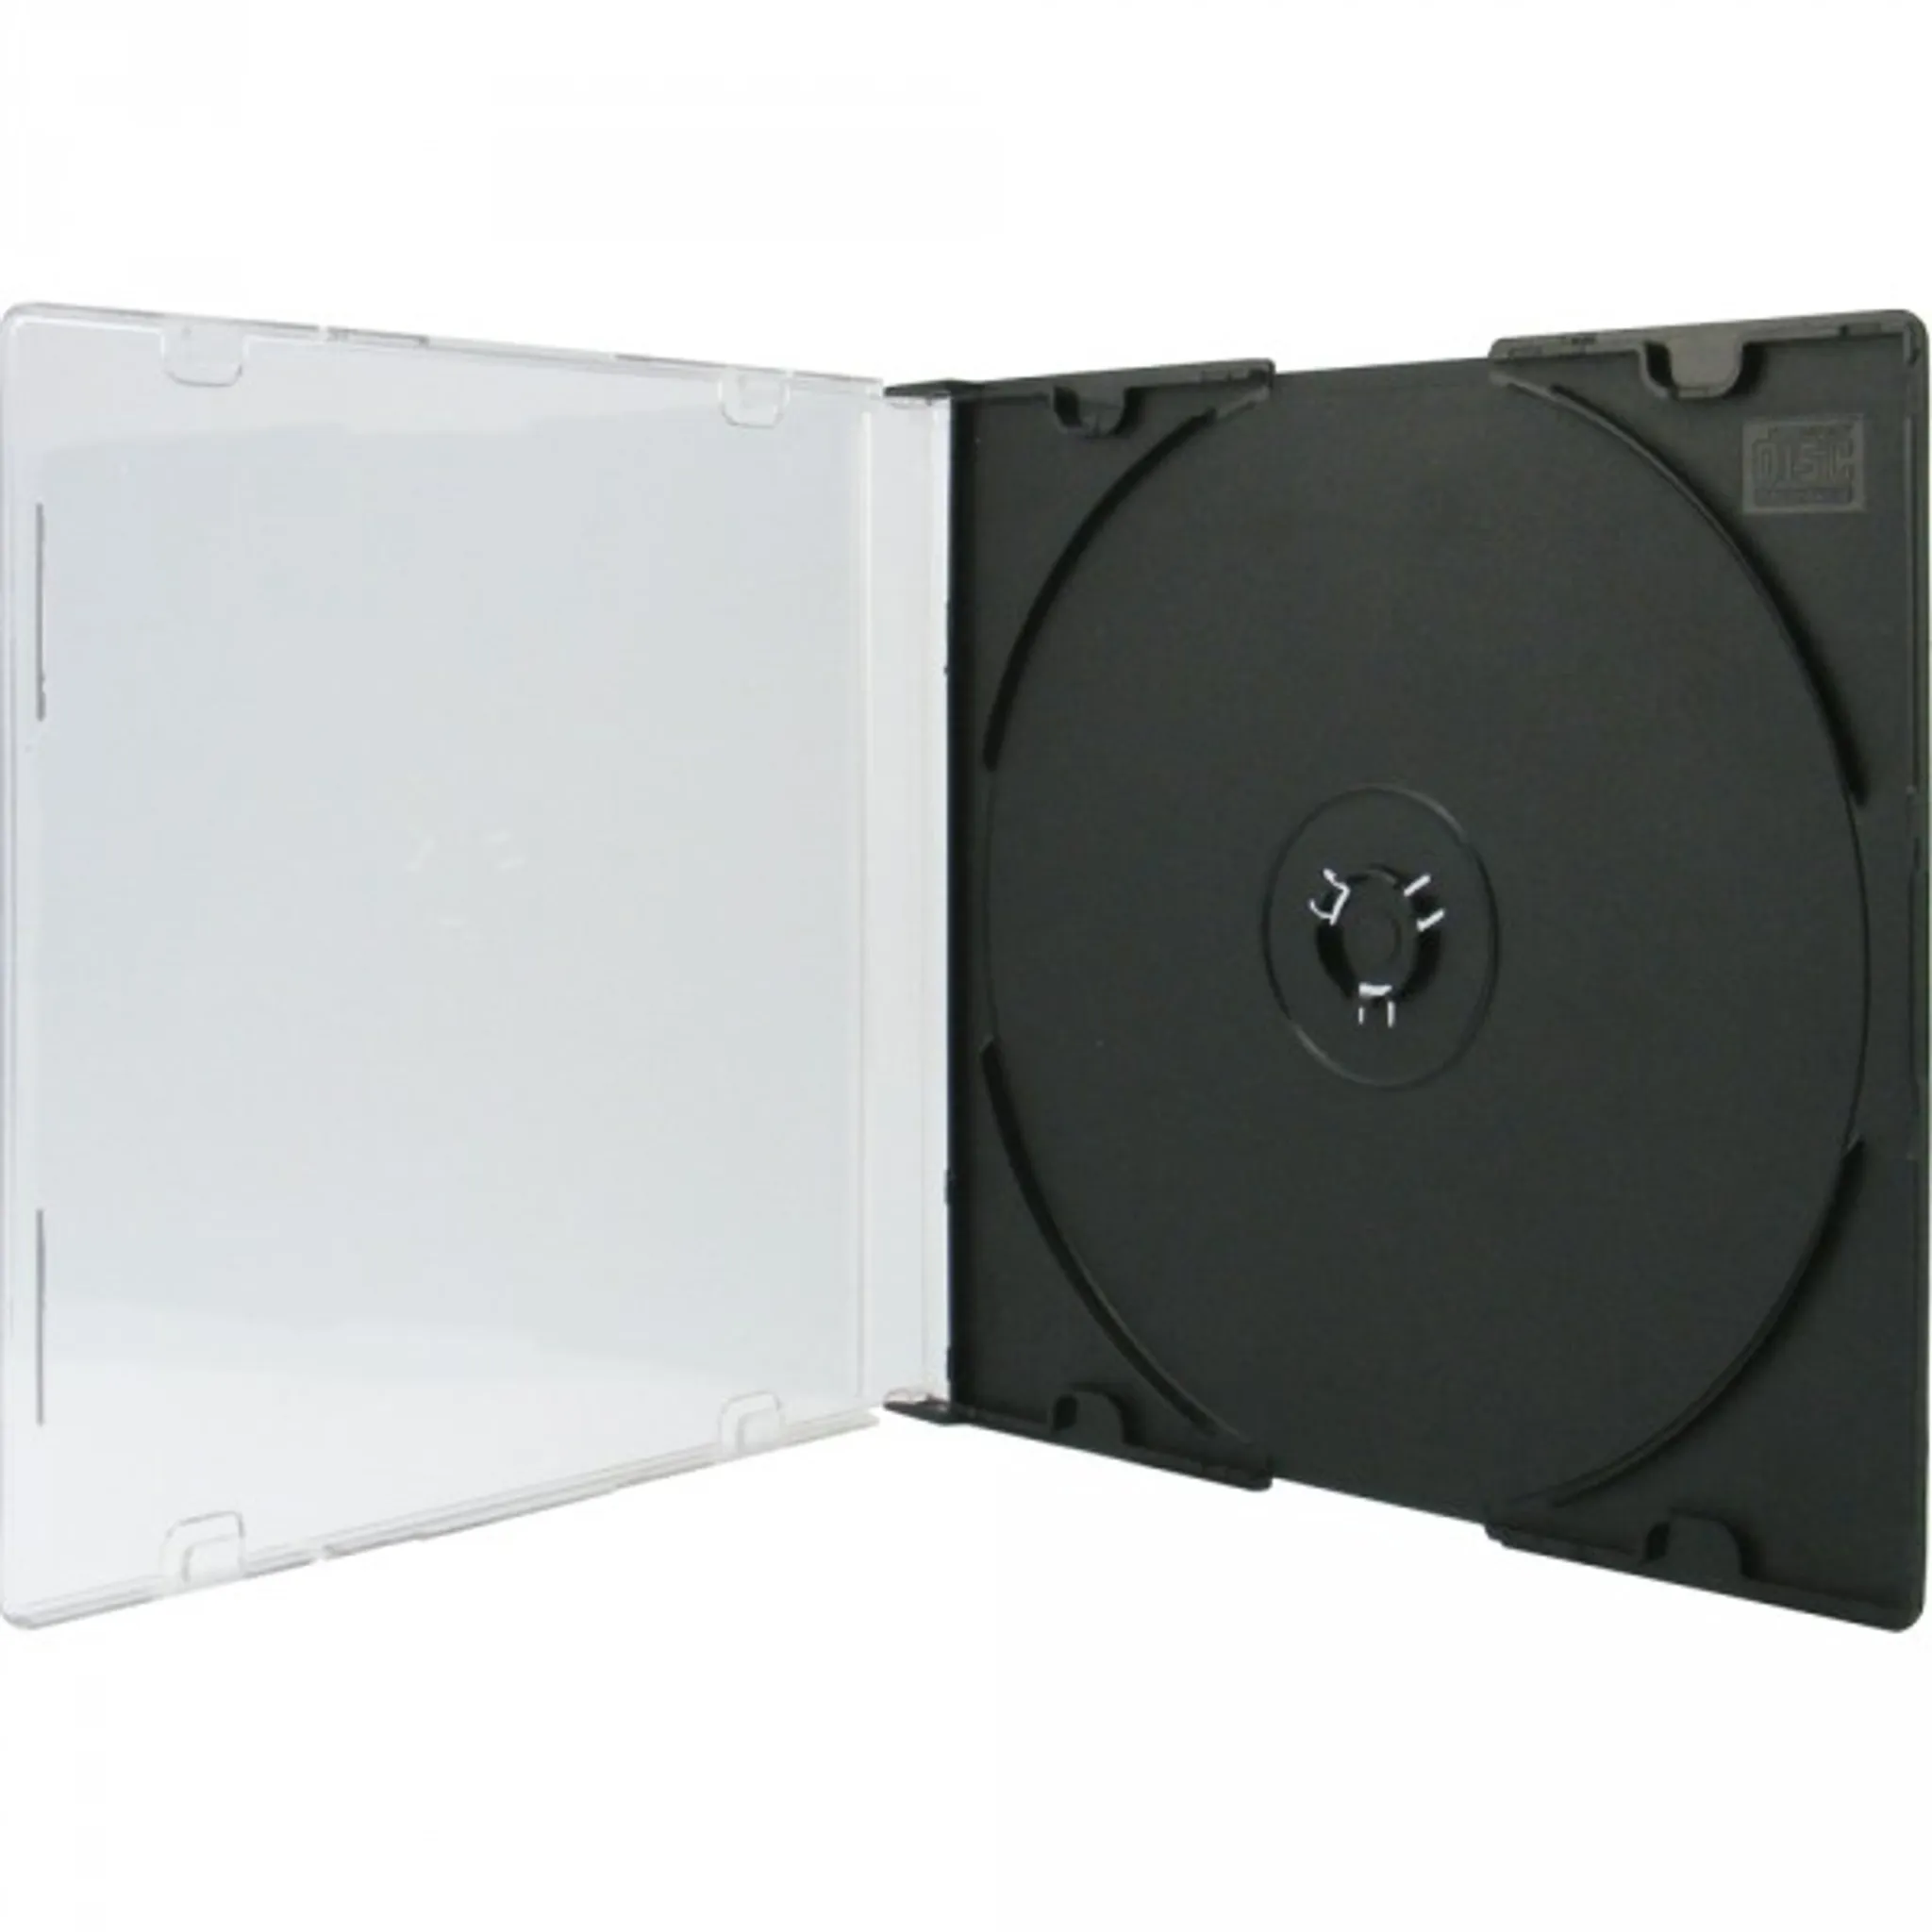 Компакт коробки. Коробка для диска 1cd Slim Case. Бокс для дисков 1cd Slim Case черный. Коробка CD Box 1 диск Jewel Black. Бокс на 1 CD Slim (CD-Box).